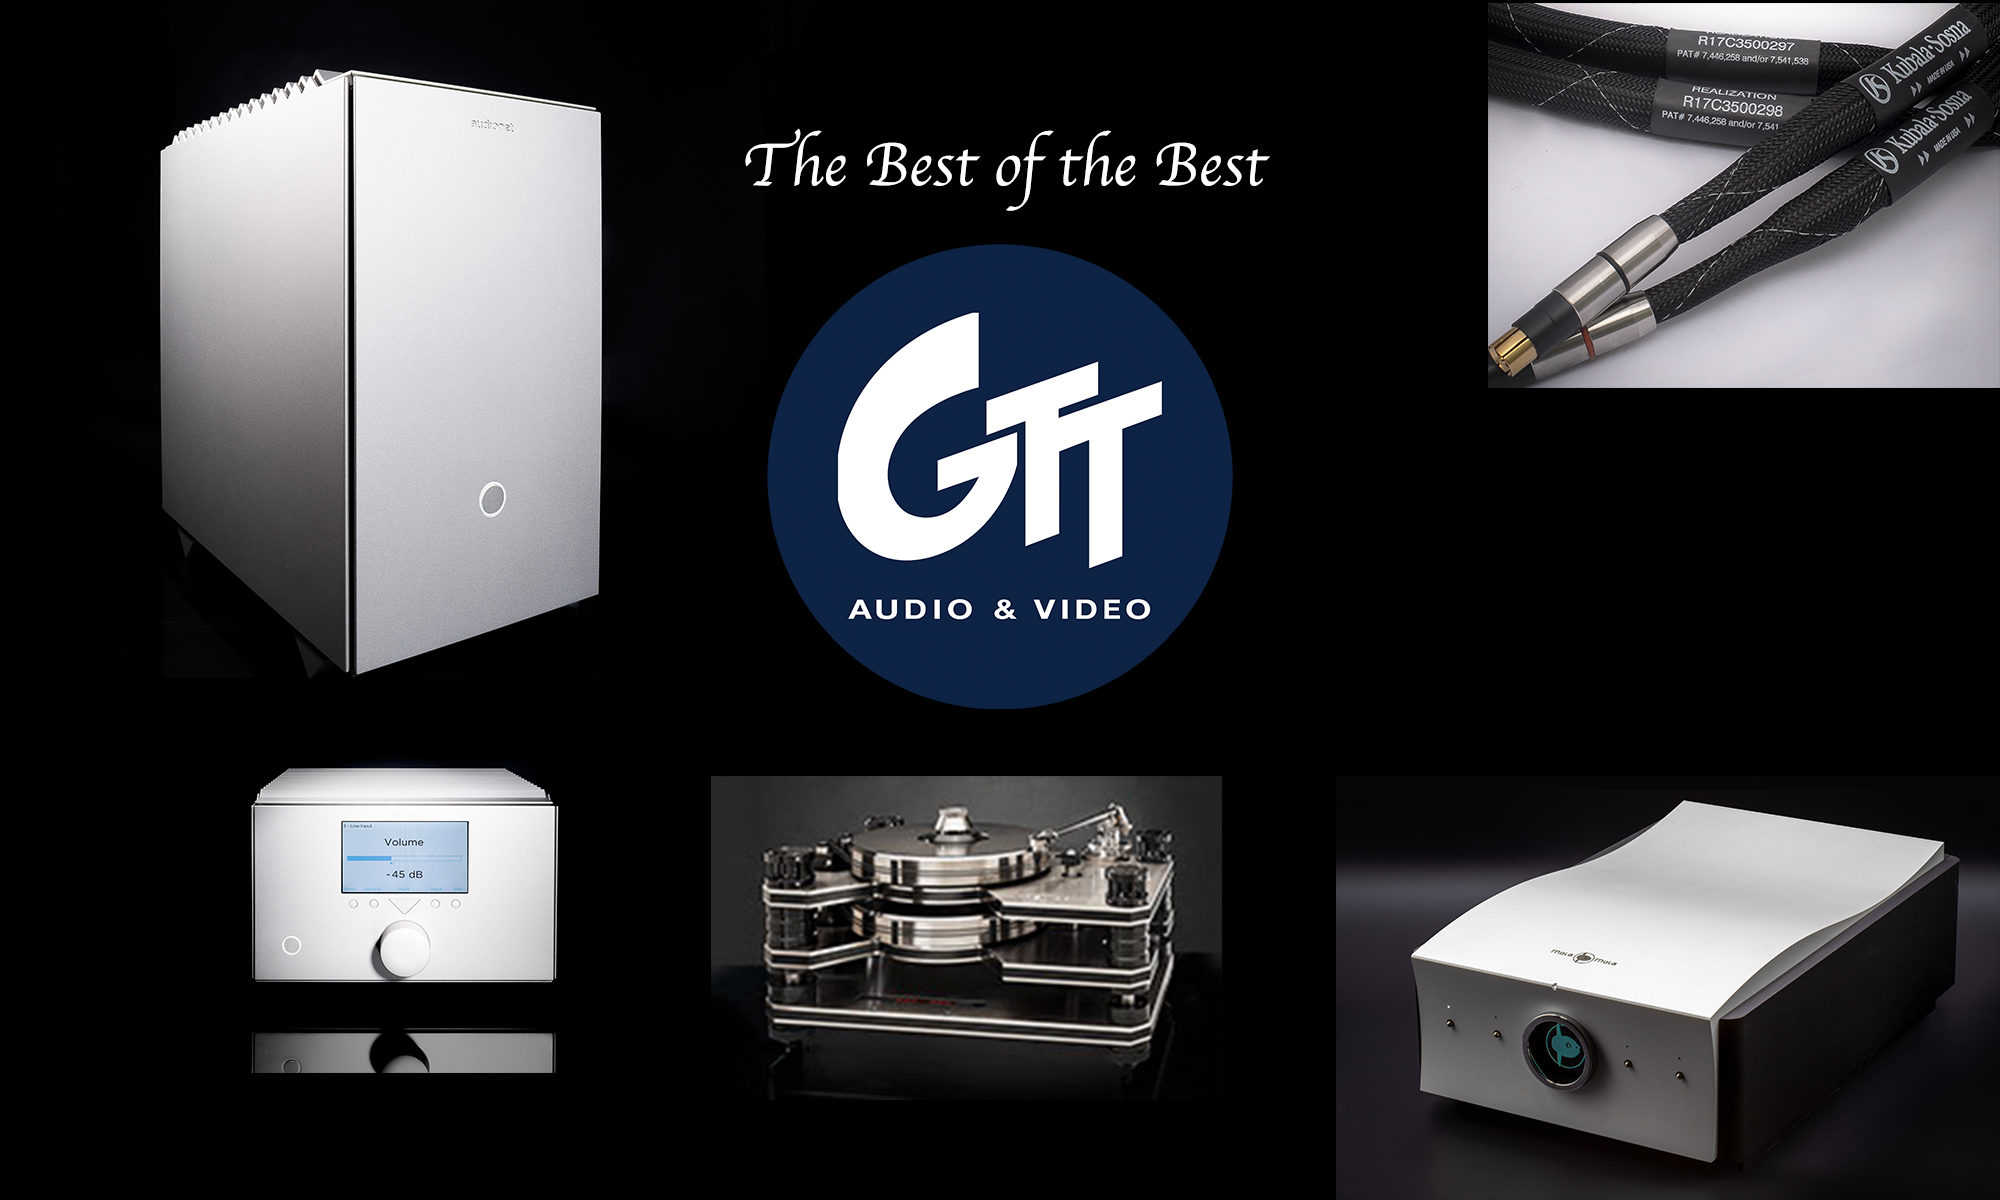 GTT Audio & Video